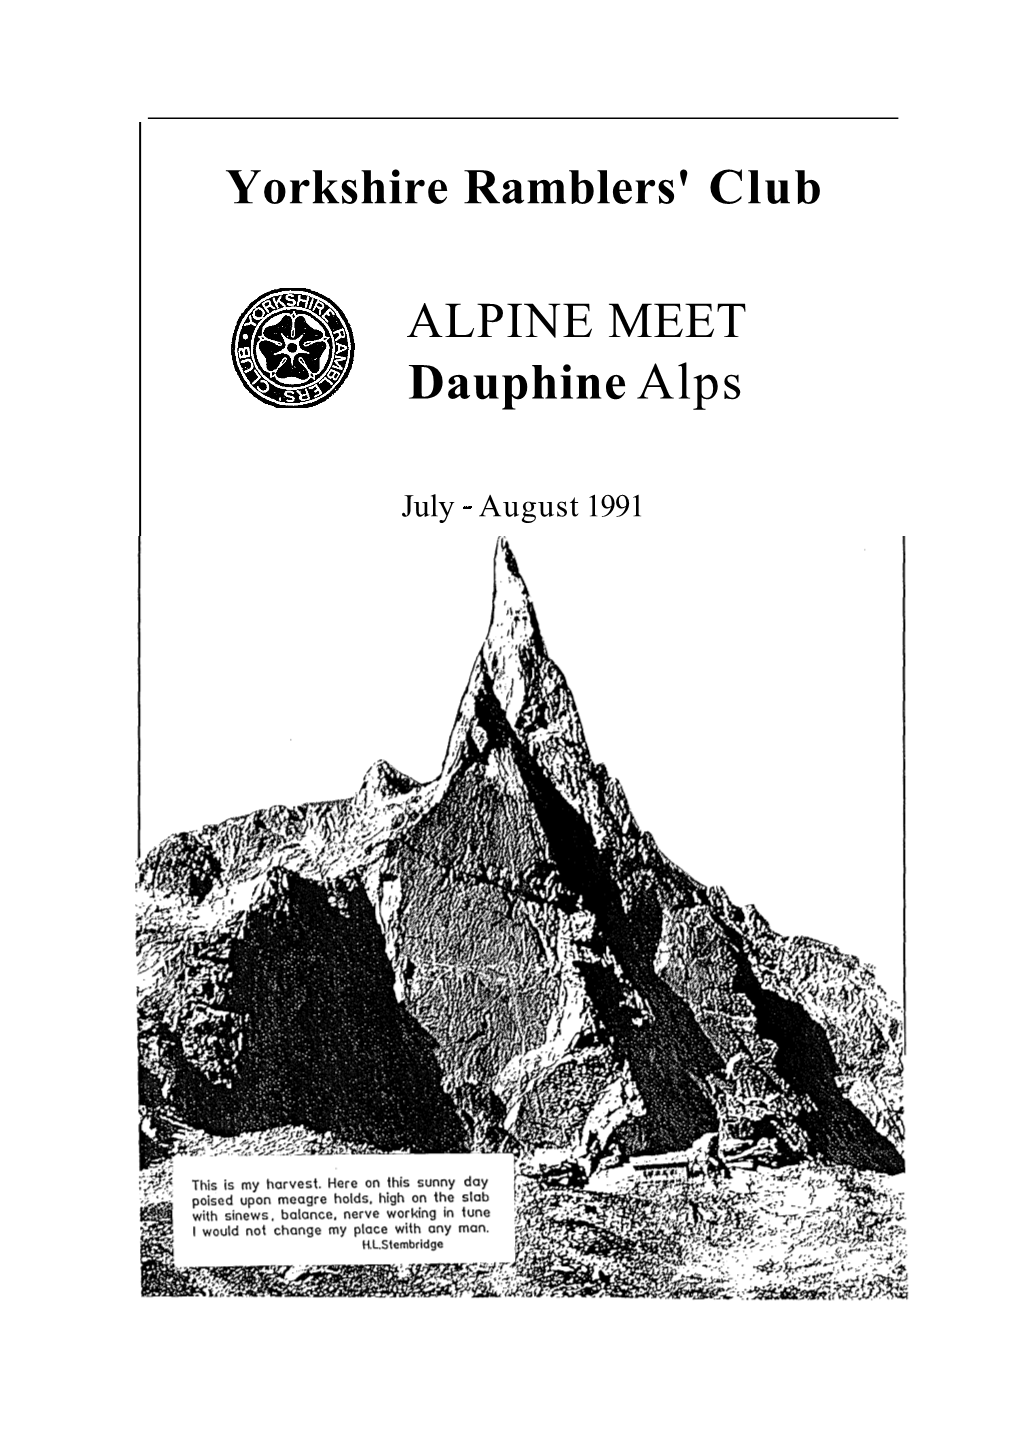 Dauphine 1991 Alpine Meet